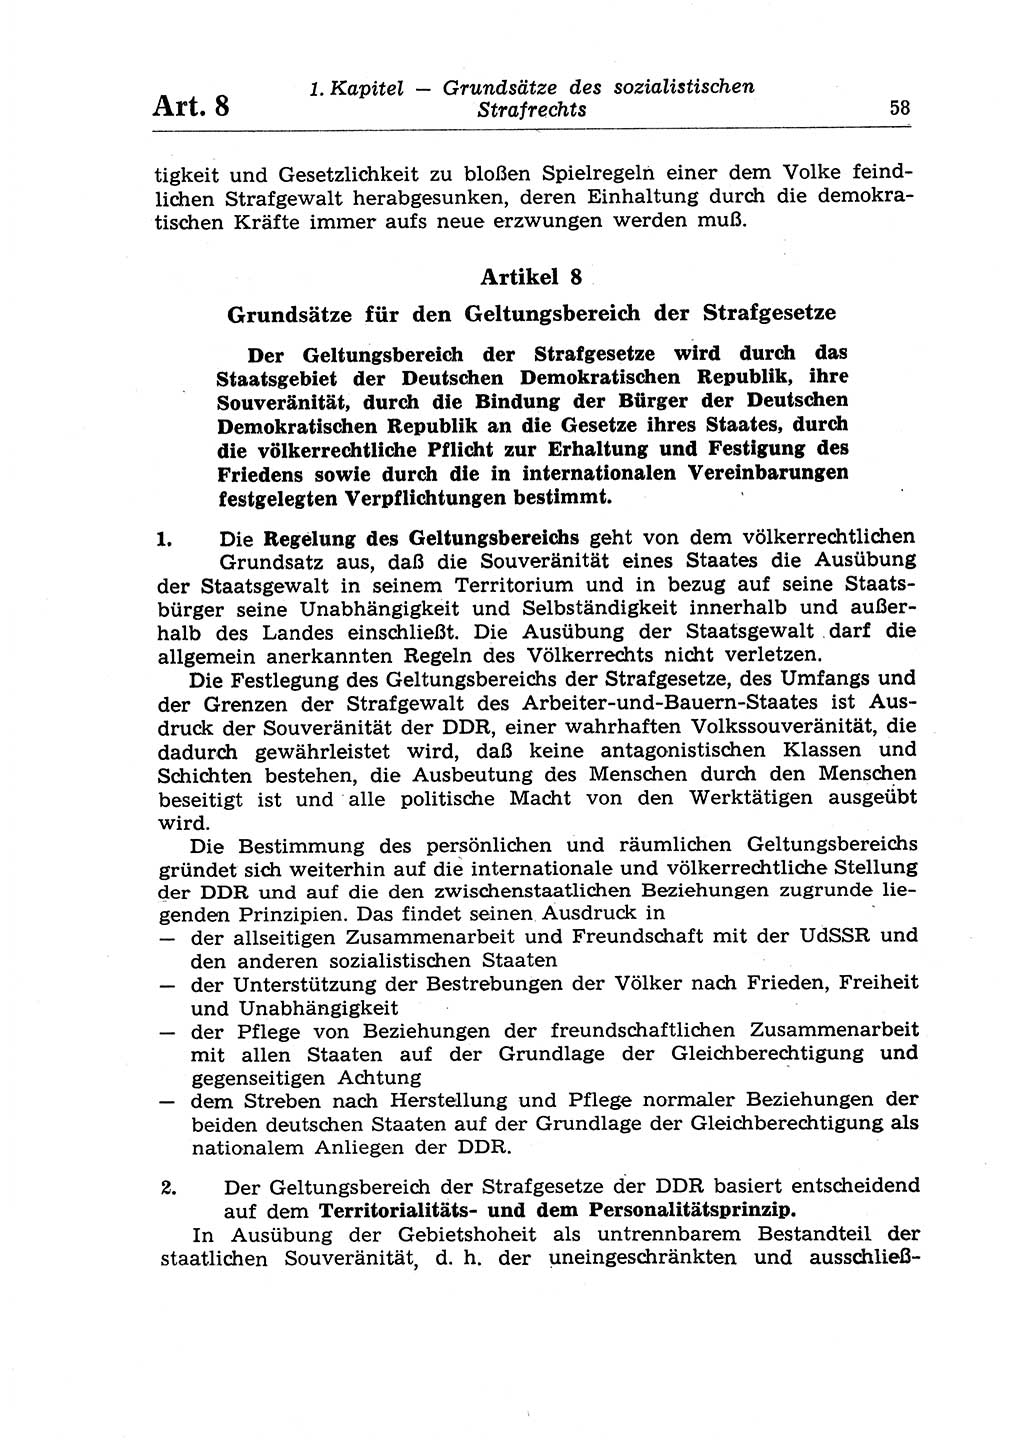 Strafrecht der Deutschen Demokratischen Republik (DDR), Lehrkommentar zum Strafgesetzbuch (StGB), Allgemeiner Teil 1970, Seite 58 (Strafr. DDR Lehrkomm. StGB AT 1970, S. 58)